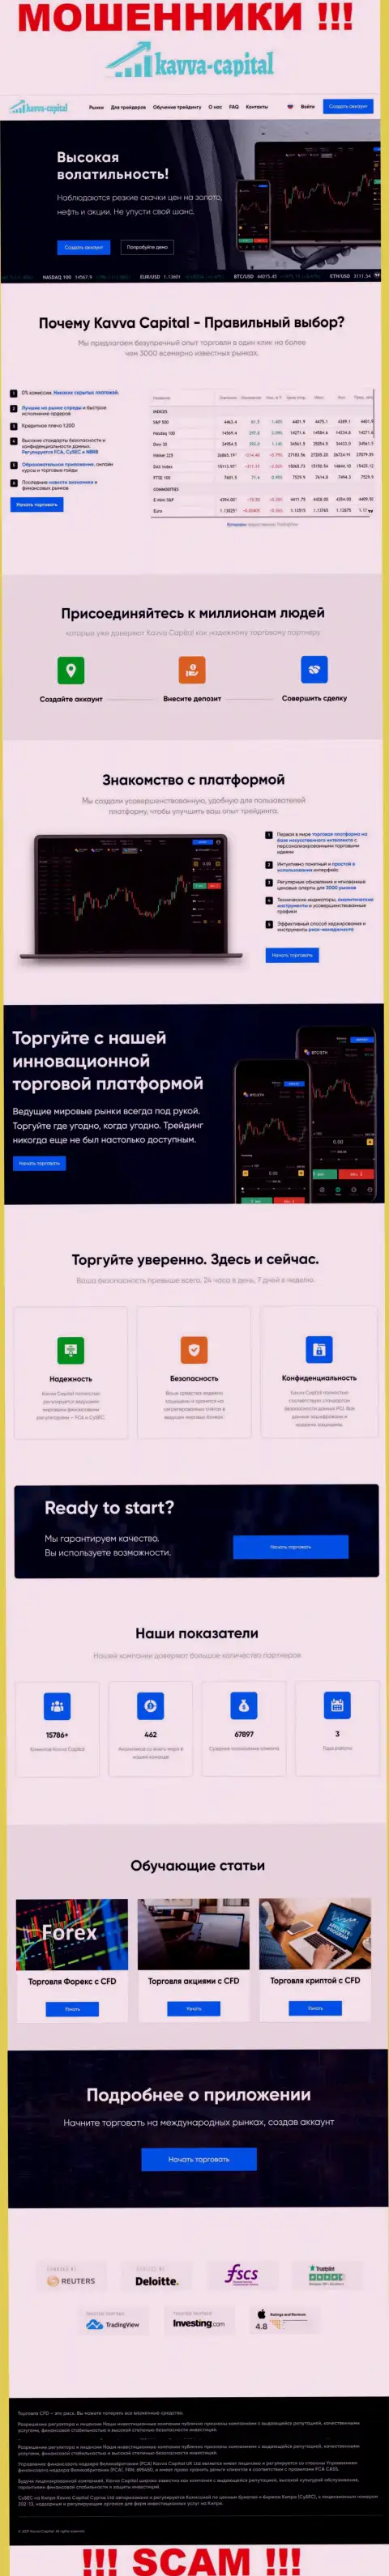 Официальный сайт мошенников Kavva Capital, забитый инфой для наивных людей